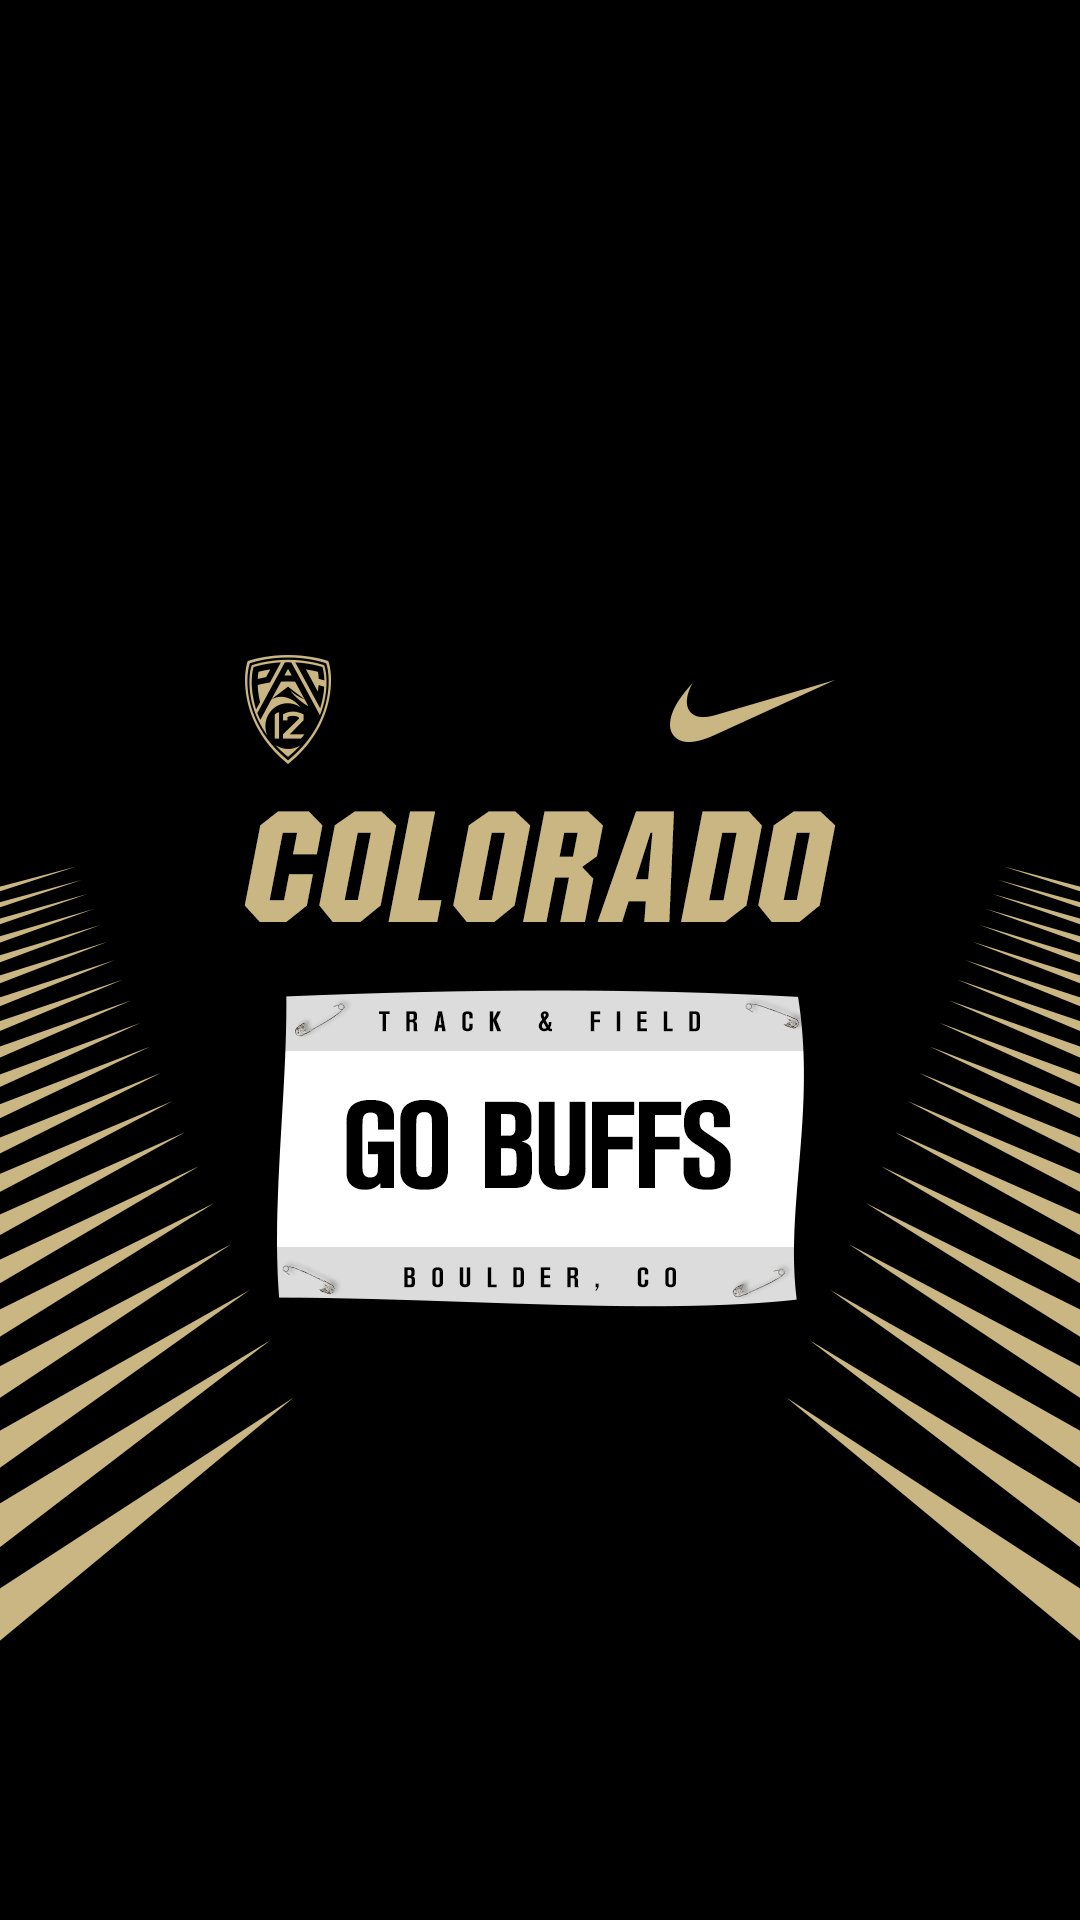 Đội tuyển Colorado Buffaloes: Hãy cùng hâm nóng tinh thần cho đội tuyển Colorado Buffaloes để cổ vũ cho họ trong những trận đấu sắp tới. Tìm hiểu thêm về các cầu thủ và chiến thuật của đội bóng, đồng thời khám phá hình ảnh và những khoảnh khắc đáng nhớ của đội tuyển.